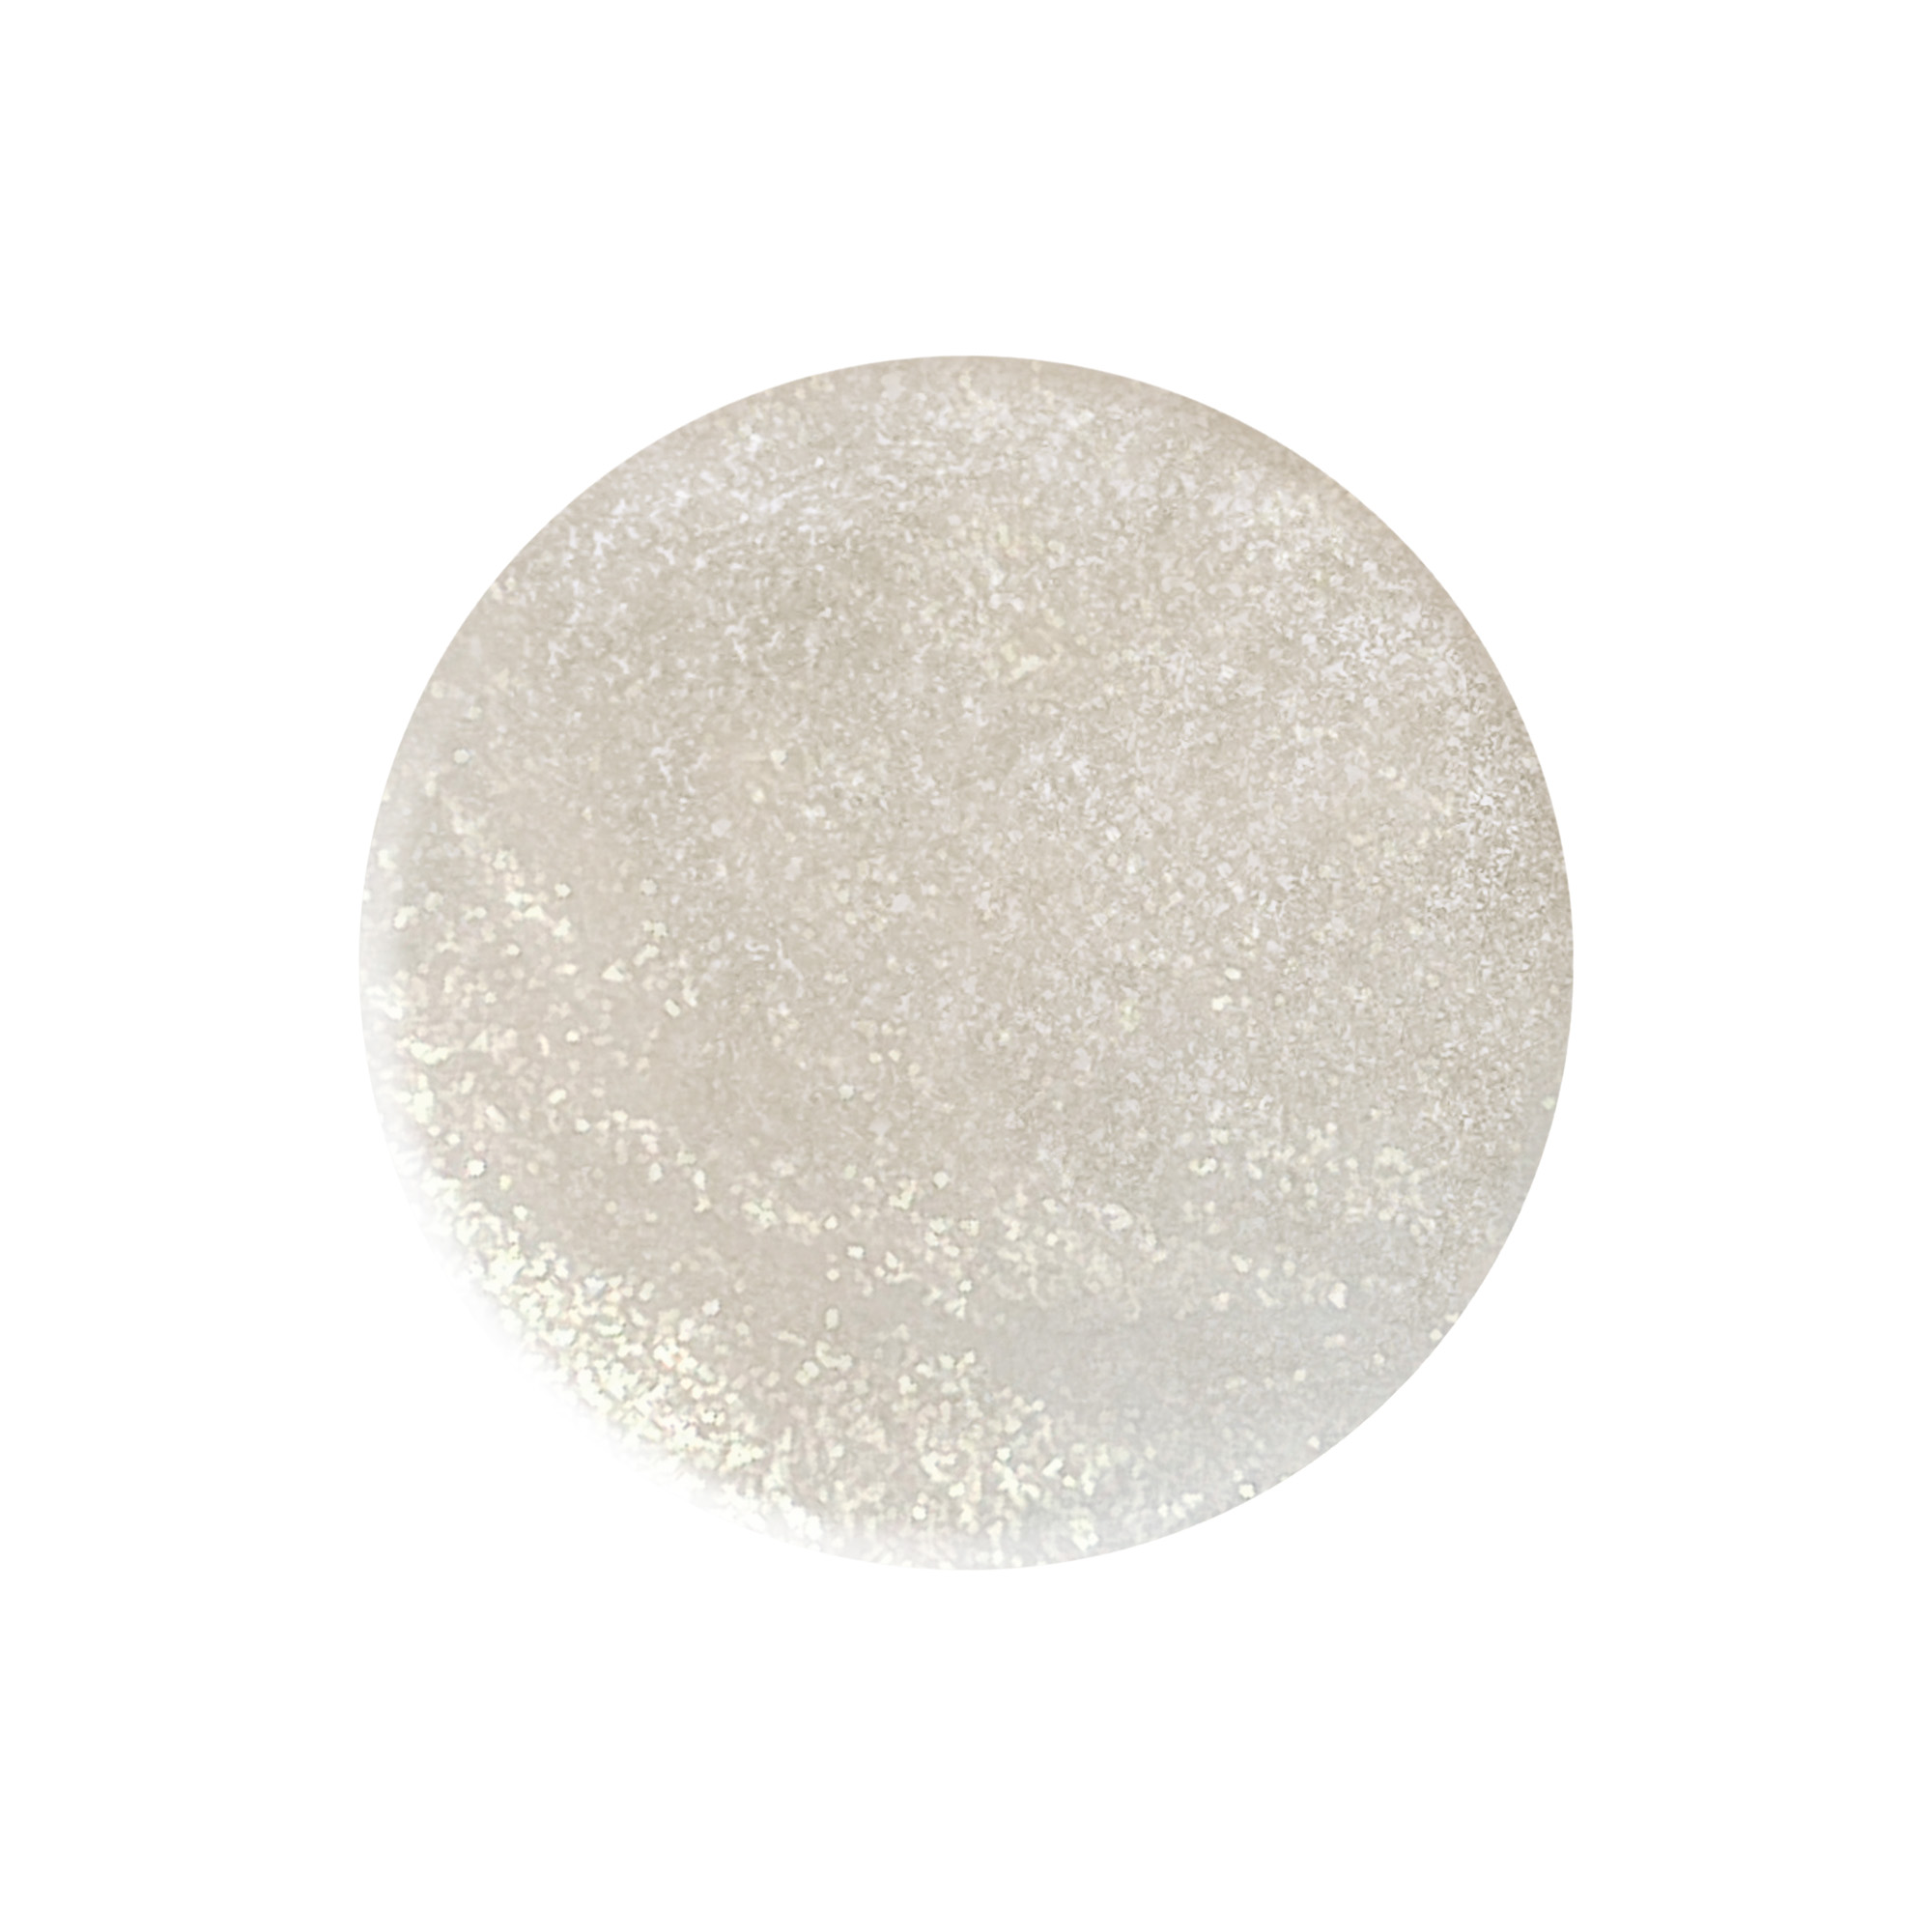 Smalto Star Dust White bianco glitter 10 ml TNS